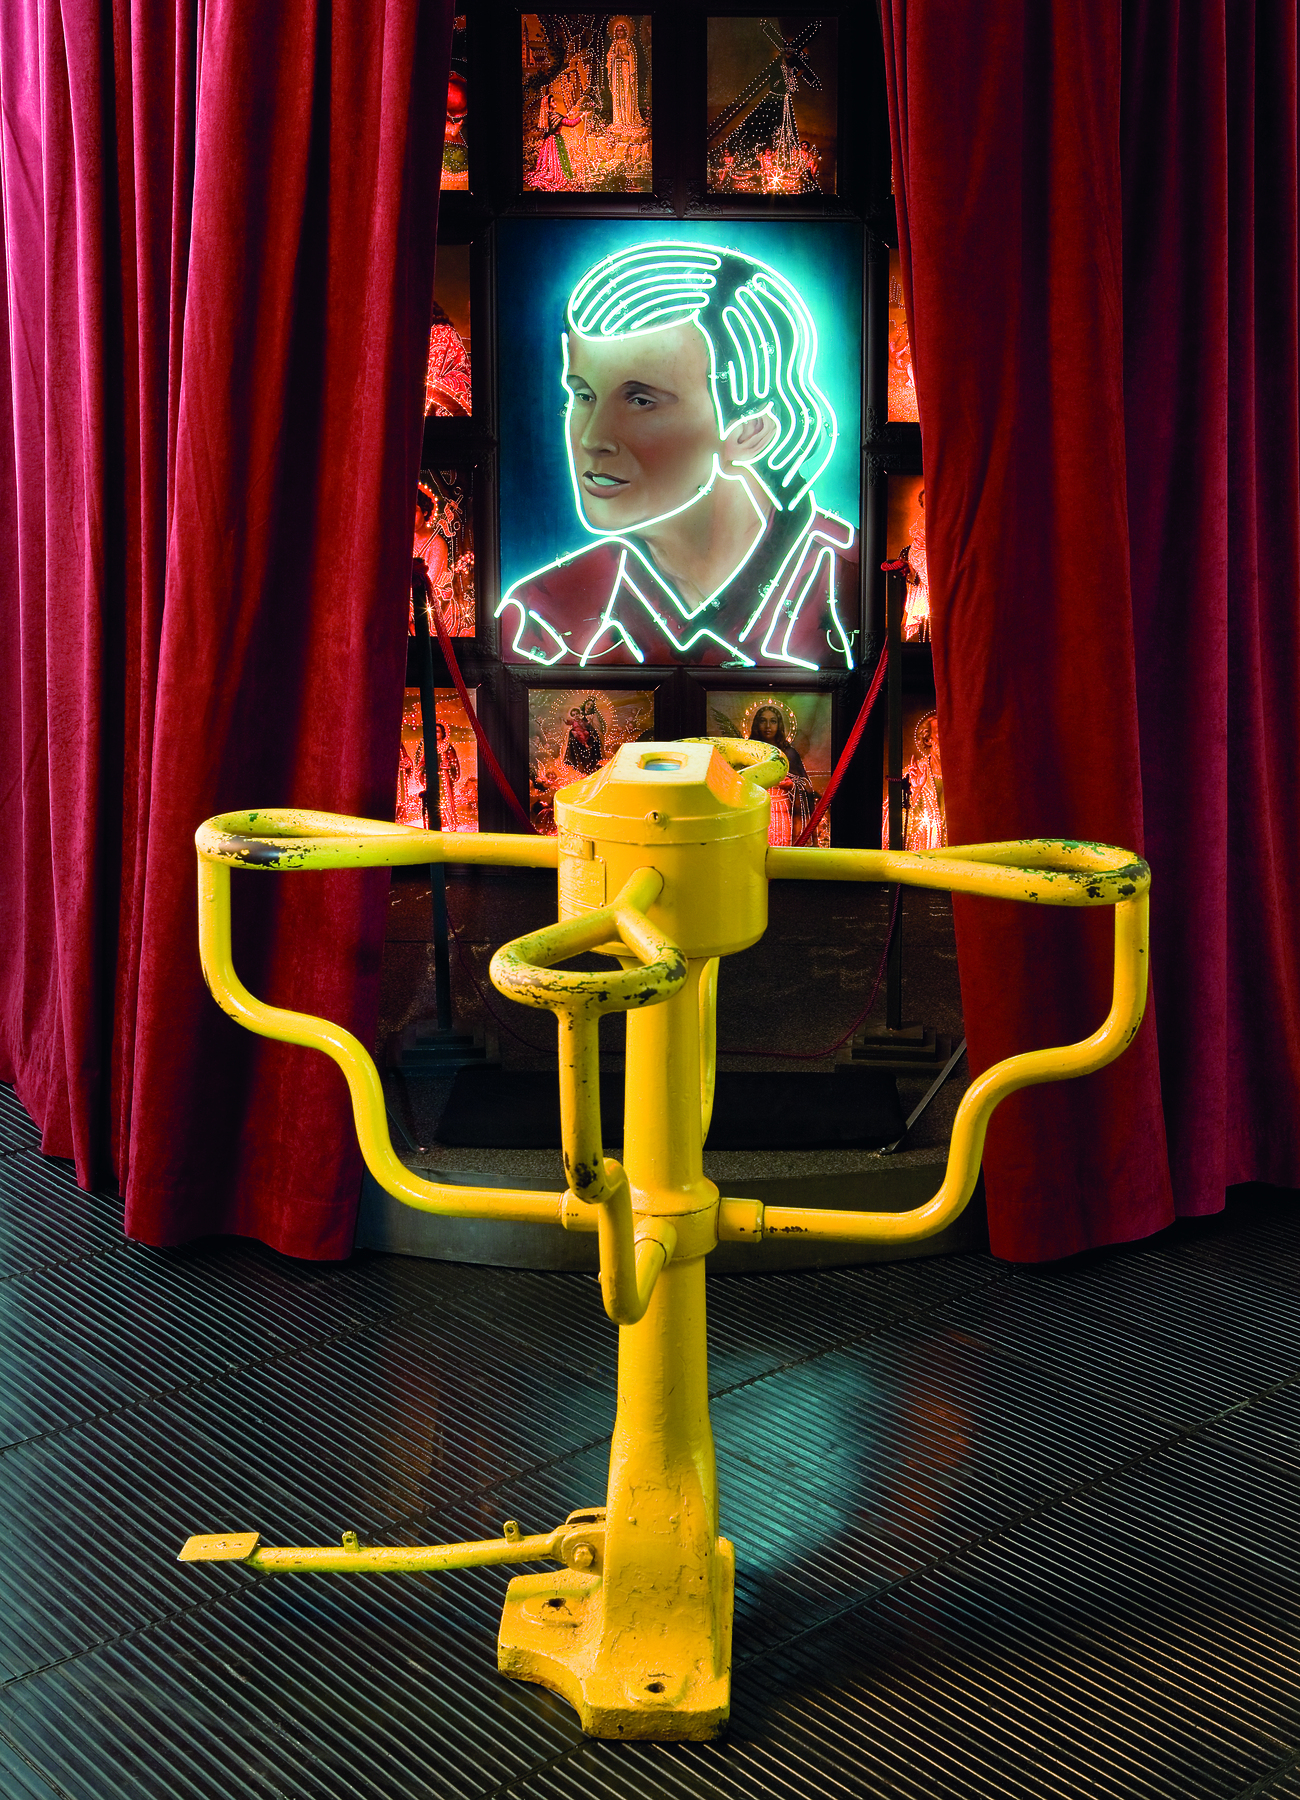 Fotografia. Obra de arte feita com uma catraca amarela. Acima da catraca, uma tela com o desenho de rosto masculino com contornos luminosos feito com lâmpadas neon. Ao redor da tela, cortinas vermelhas.